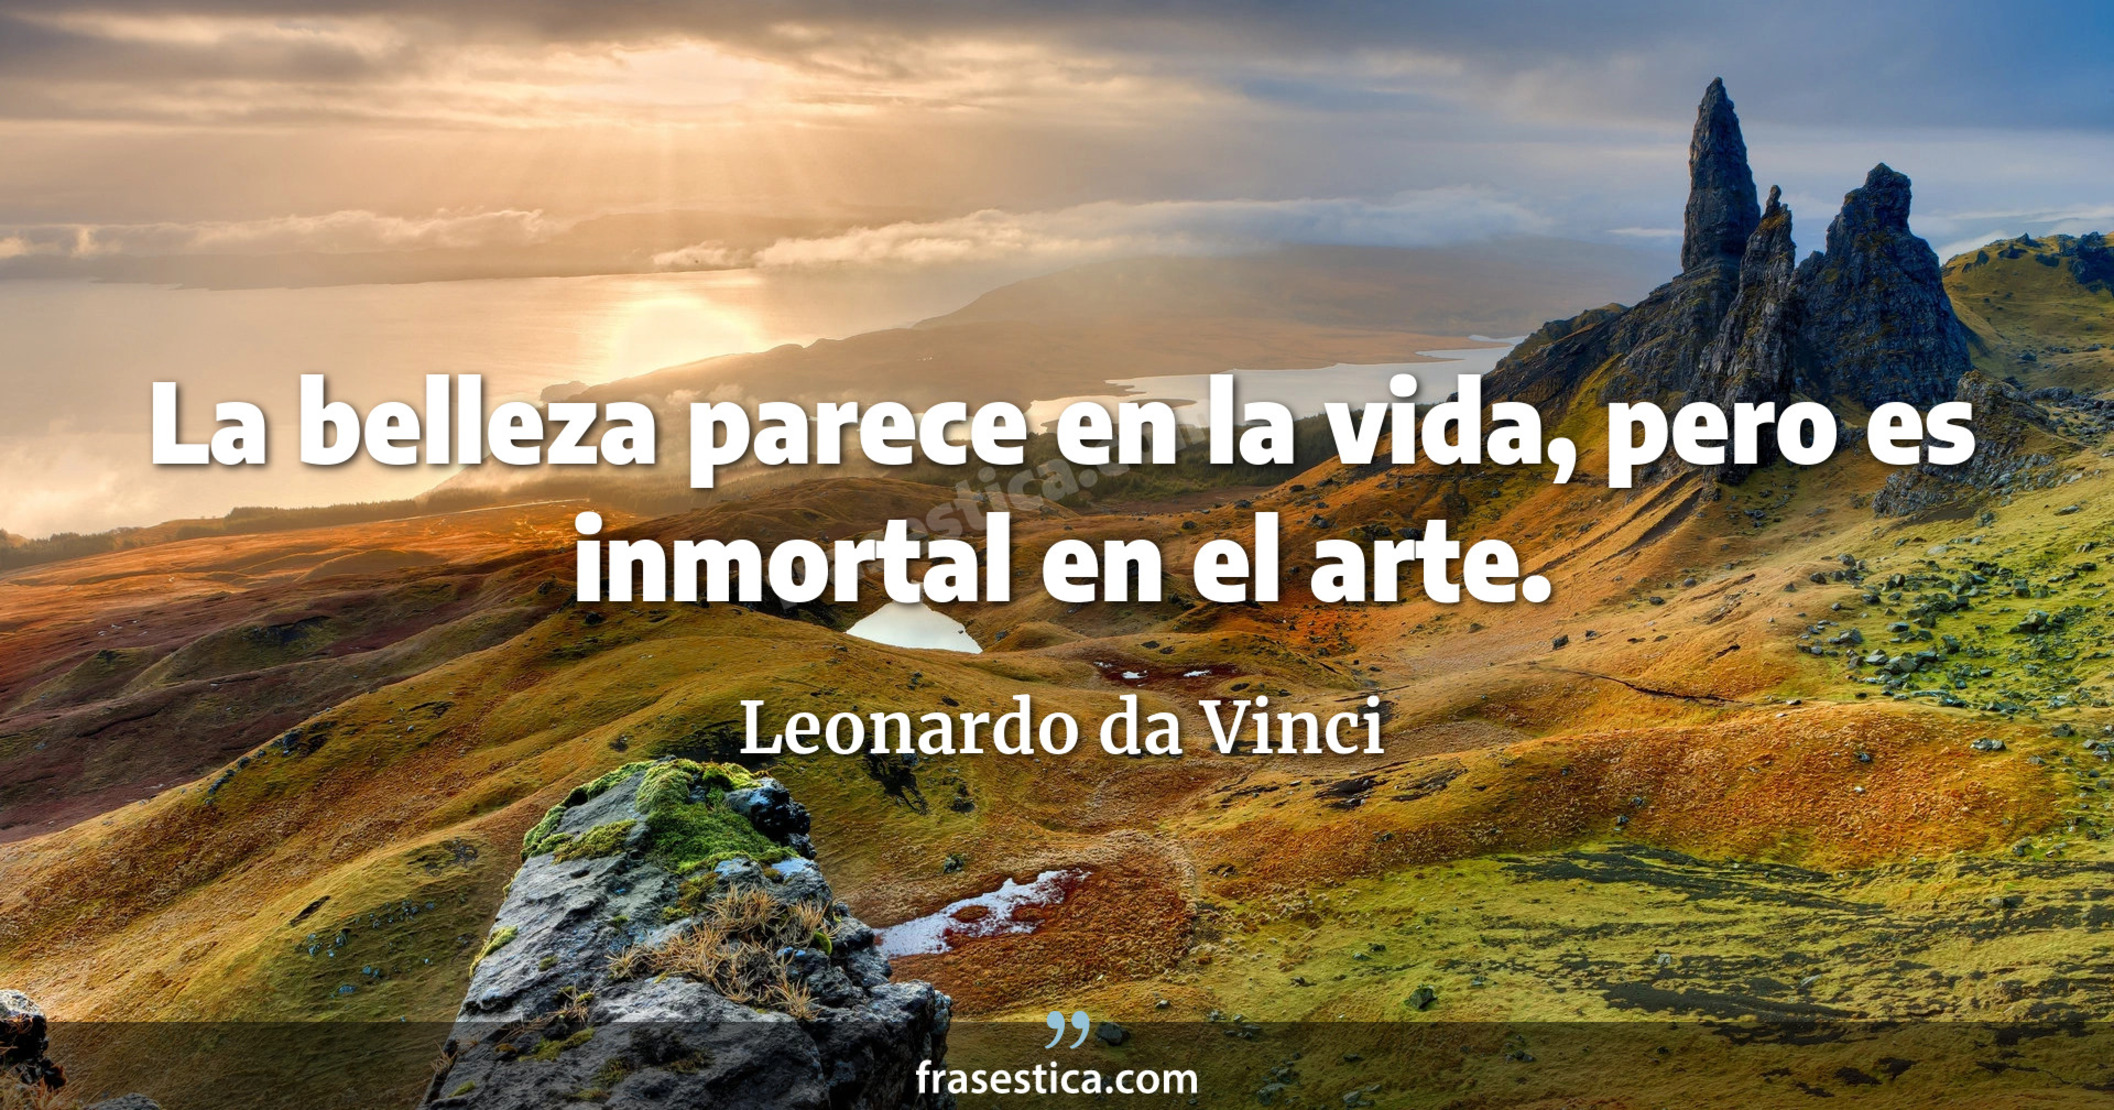 La belleza parece en la vida, pero es inmortal en el arte. - Leonardo da Vinci